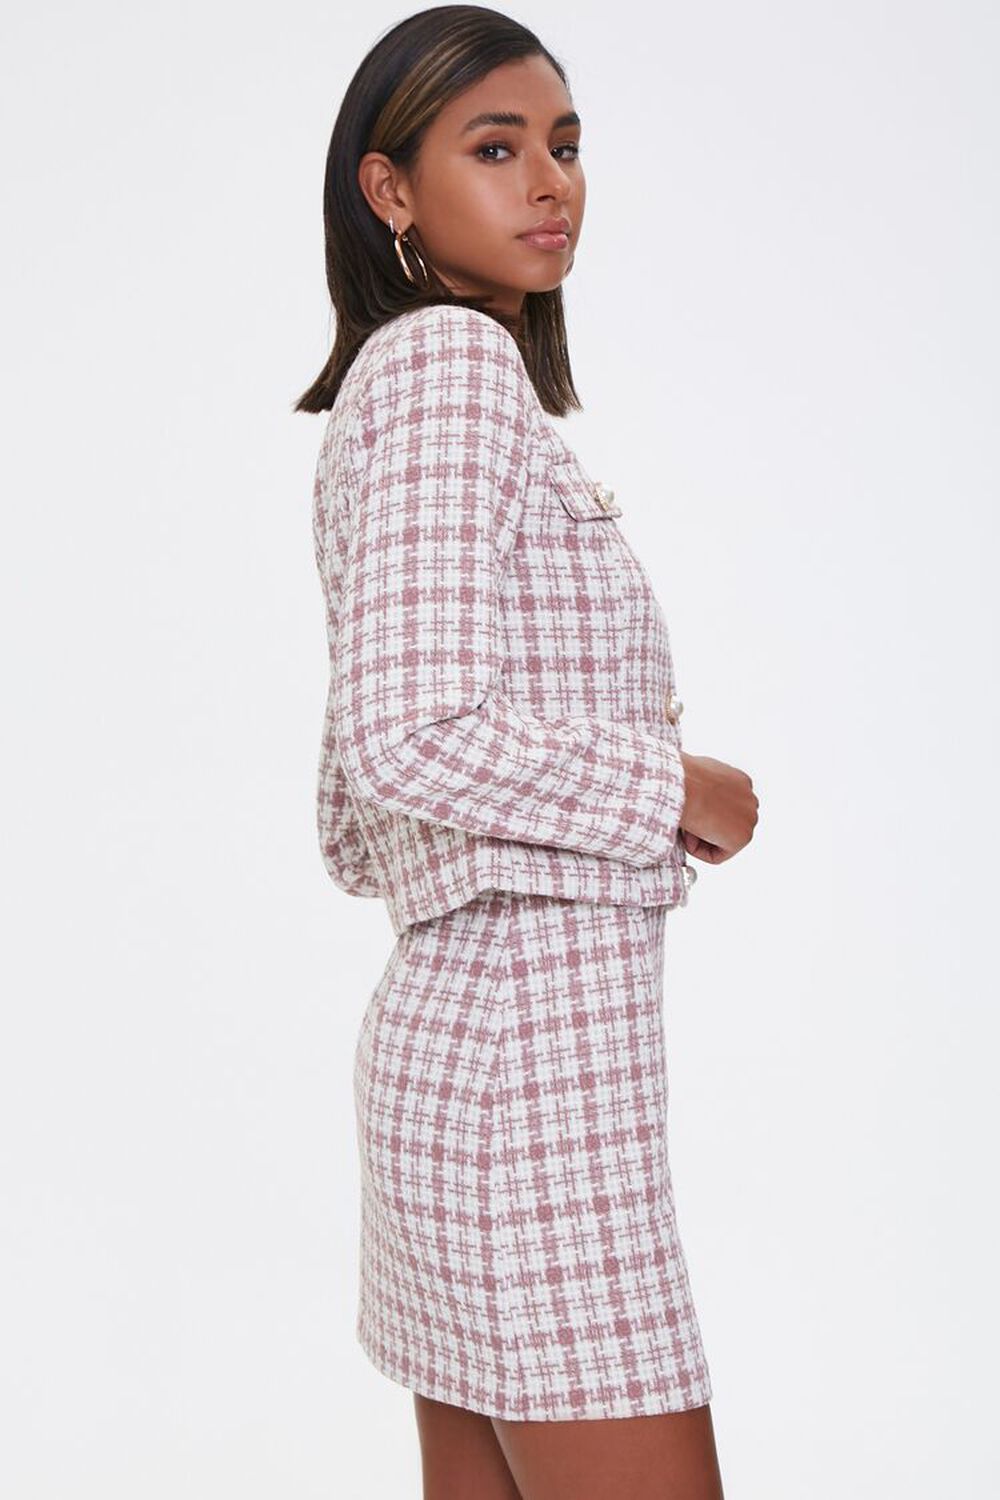 Checkered Blazer And Skirt | lupon.gov.ph